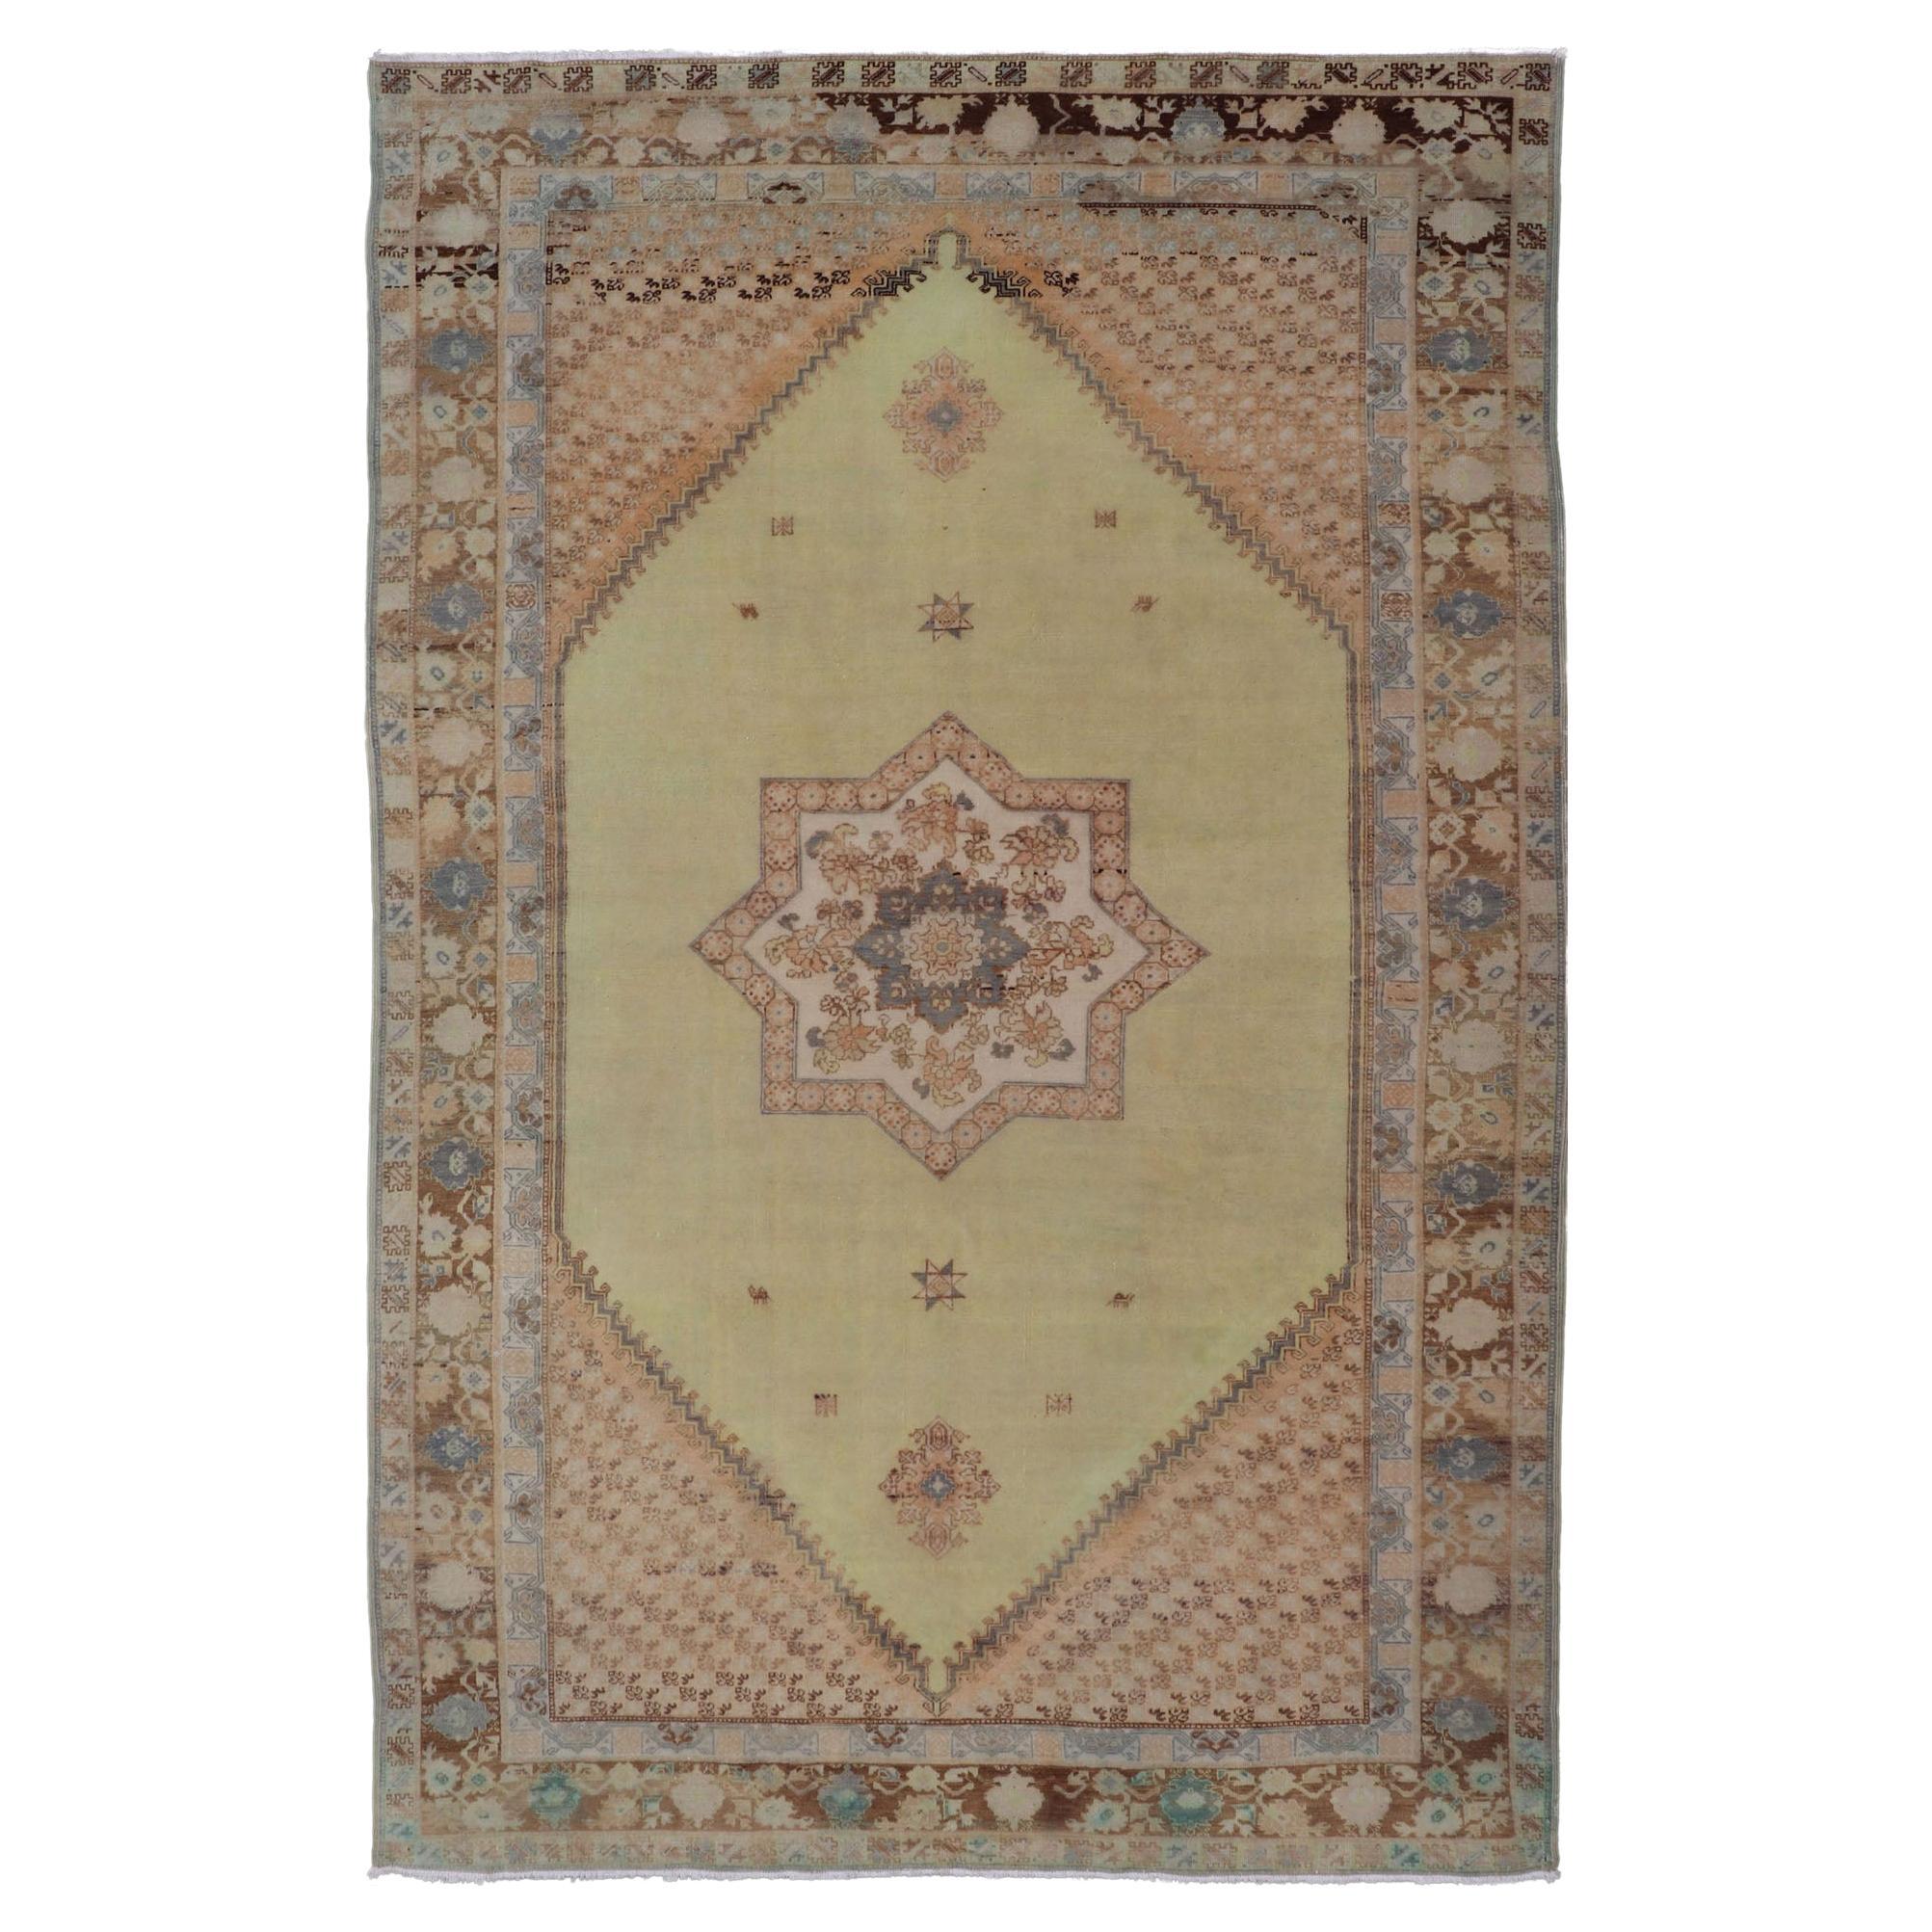 Großer marokkanischer Vintage-Teppich mit Sternmedaillon in Hellgrün, Braun